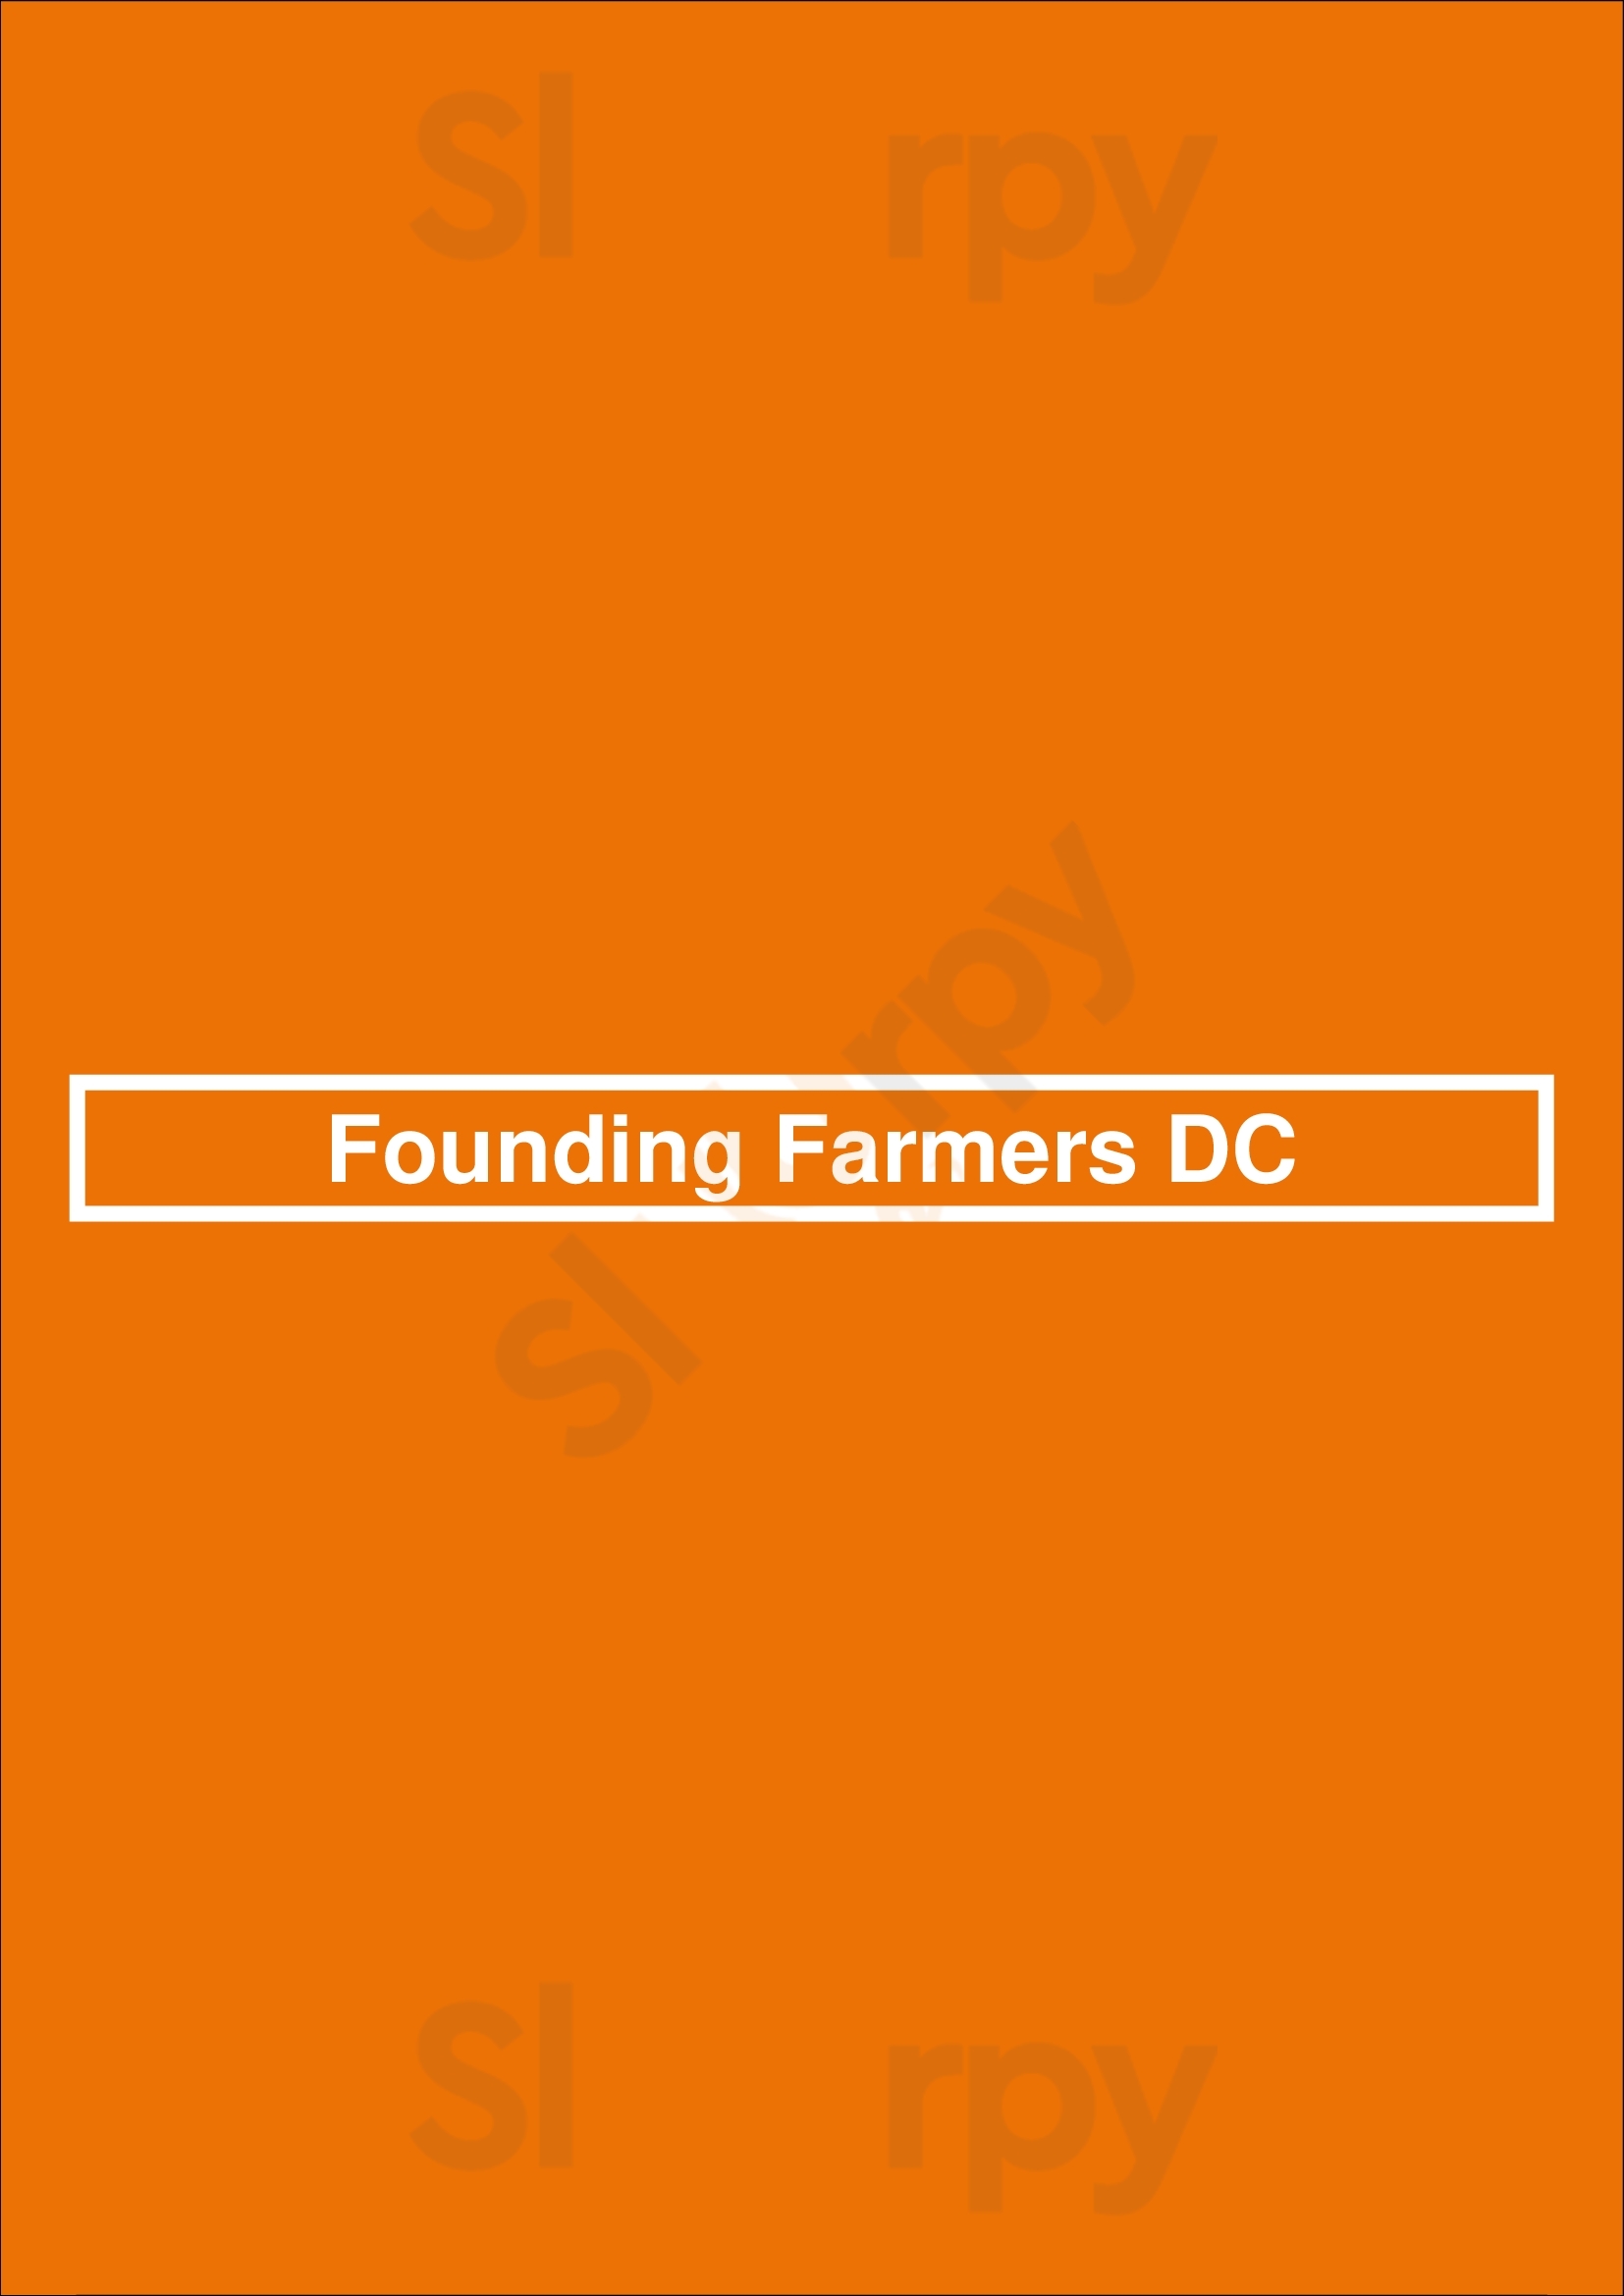 Founding Farmers Dc Washington DC Menu - 1